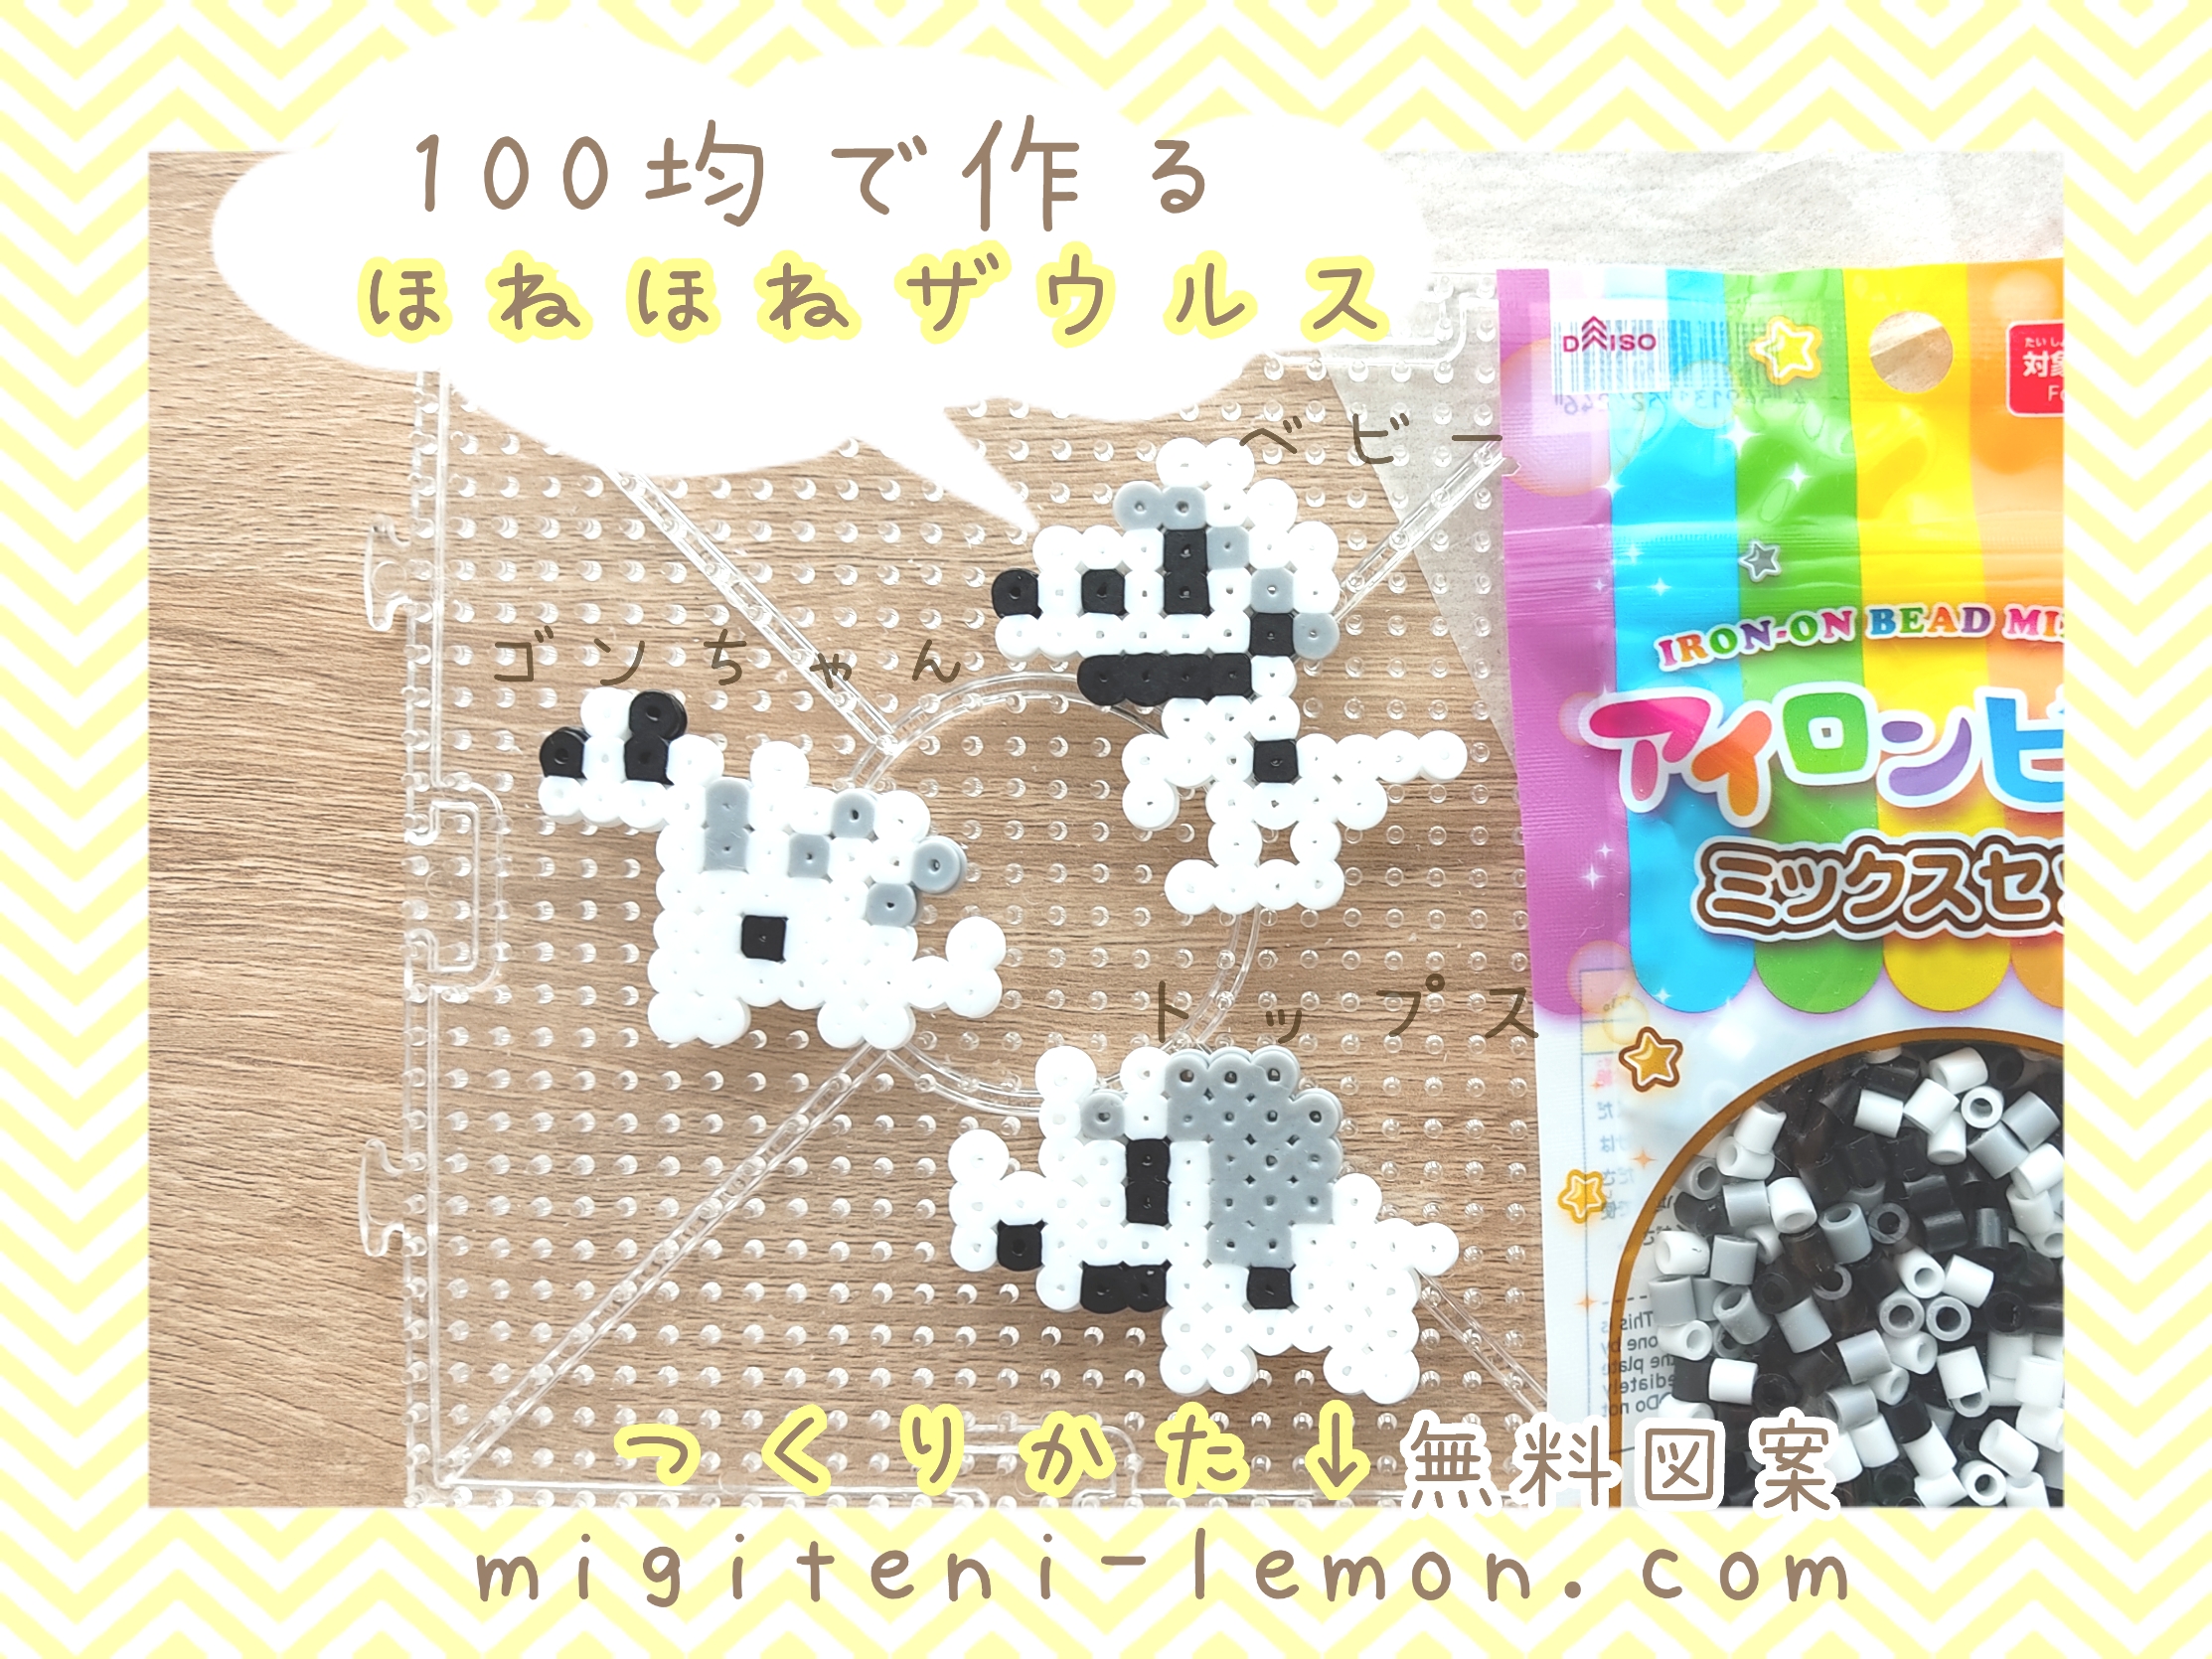 honehone-zaurusu-free-zuan-dinosaur-iron-beads-kawaii-handmade-daiso-small-square-black-white-kids-baby-100kin